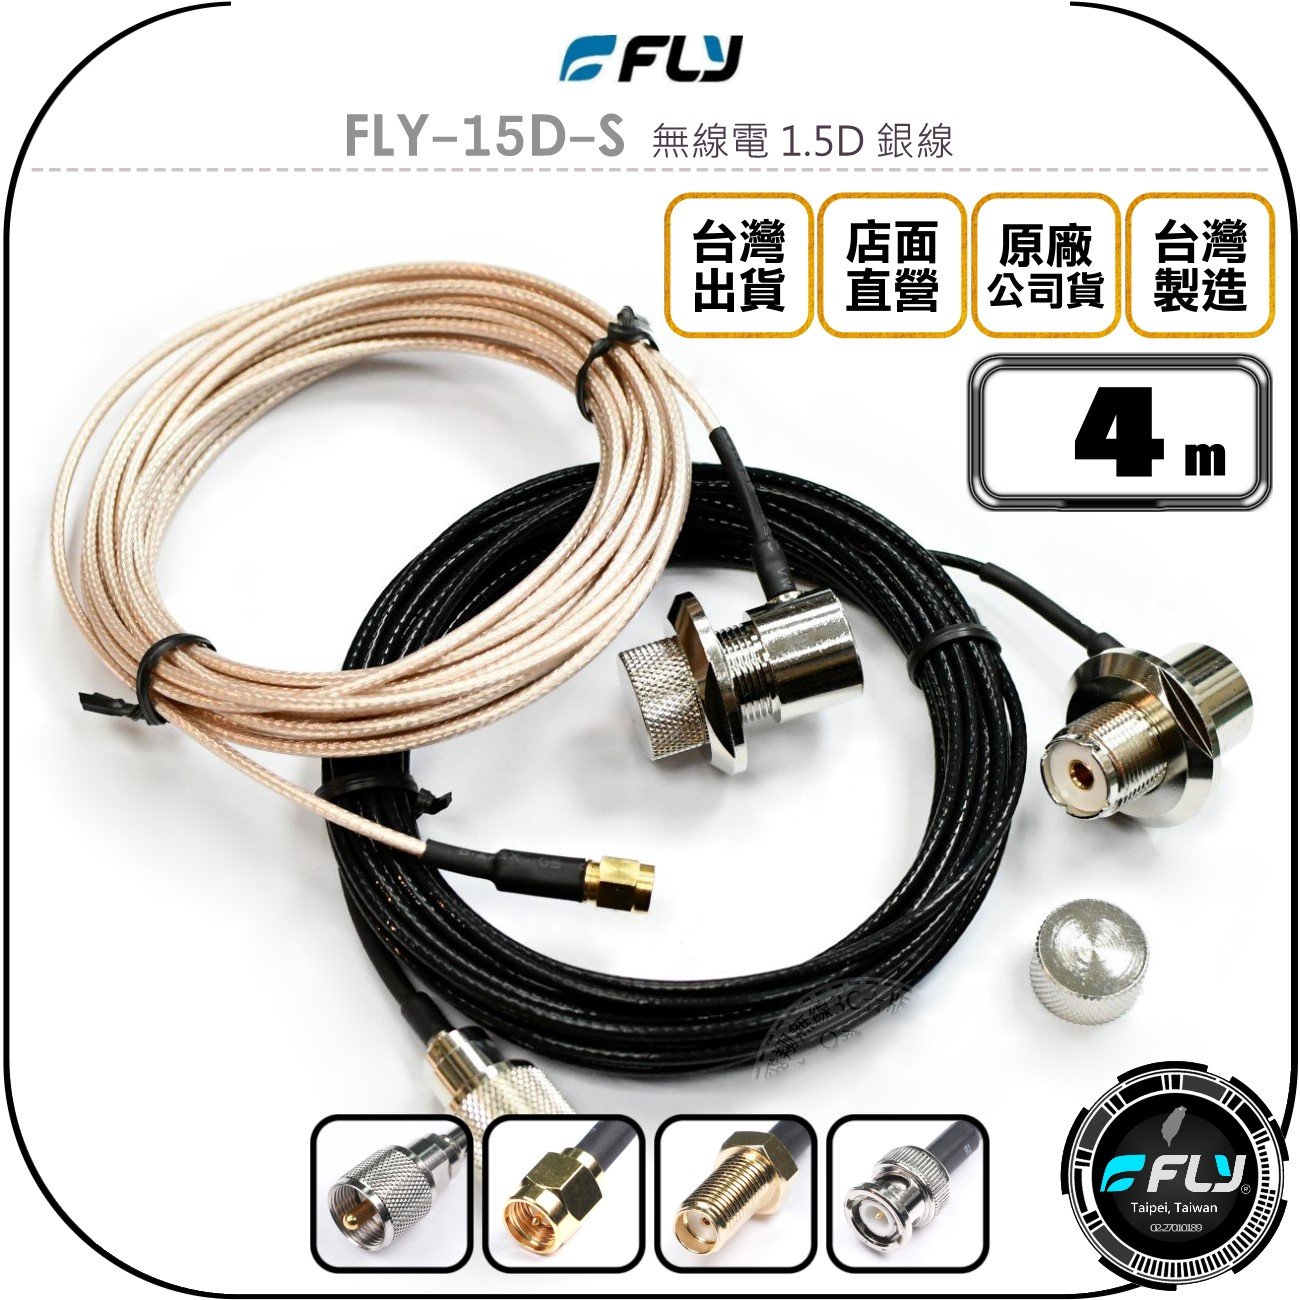 《飛翔無線3C》FLY FLY-15D-S 無線電 1.5D 銀線 4m◉公司貨◉訊號線◉對講機收發◉車機外接傳輸